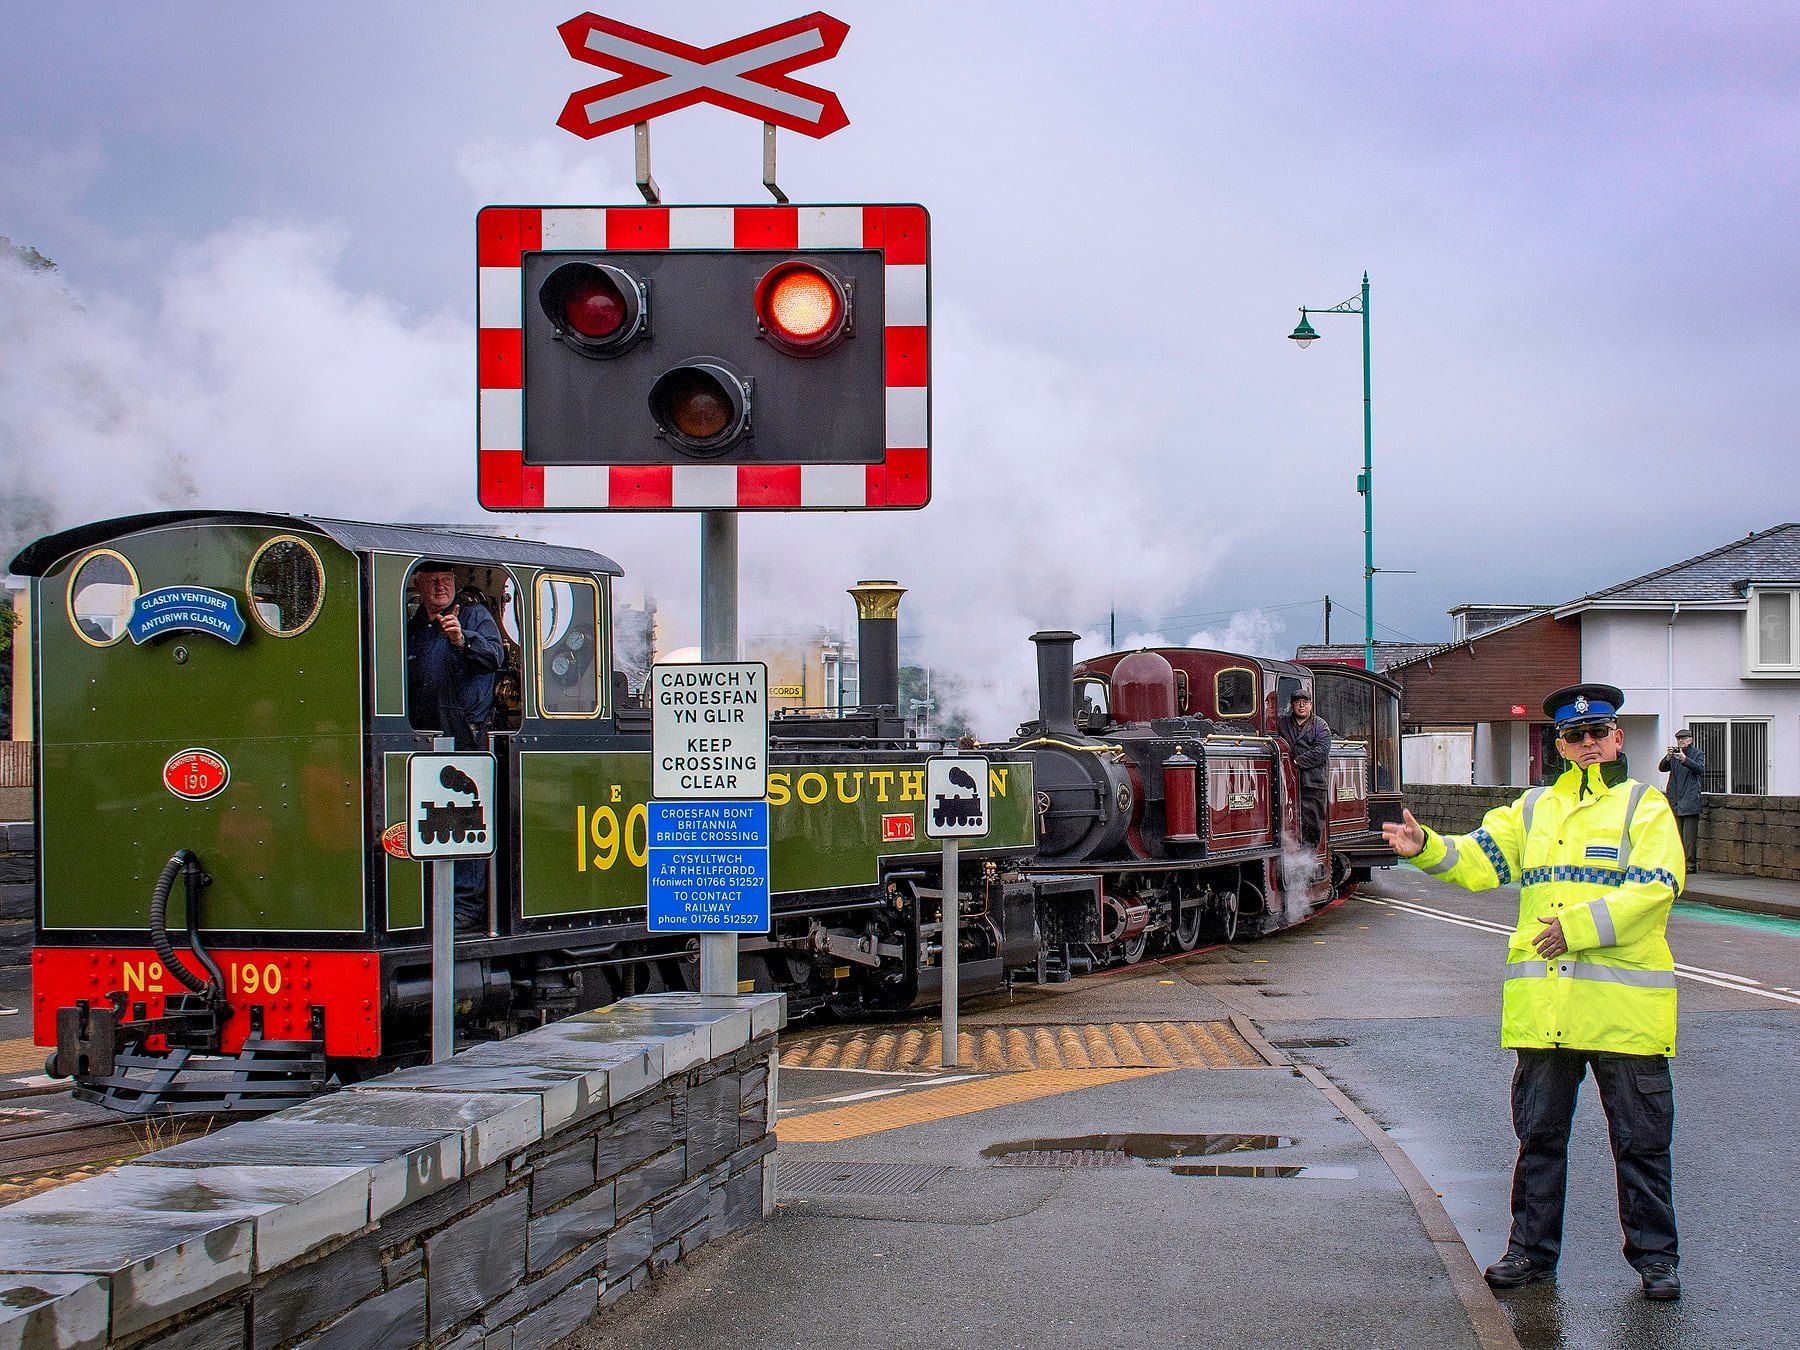 Ffestiniog & Welsh Highland Railways. Picture: Ffestiniog & Welsh Highland Railways (Facebook)